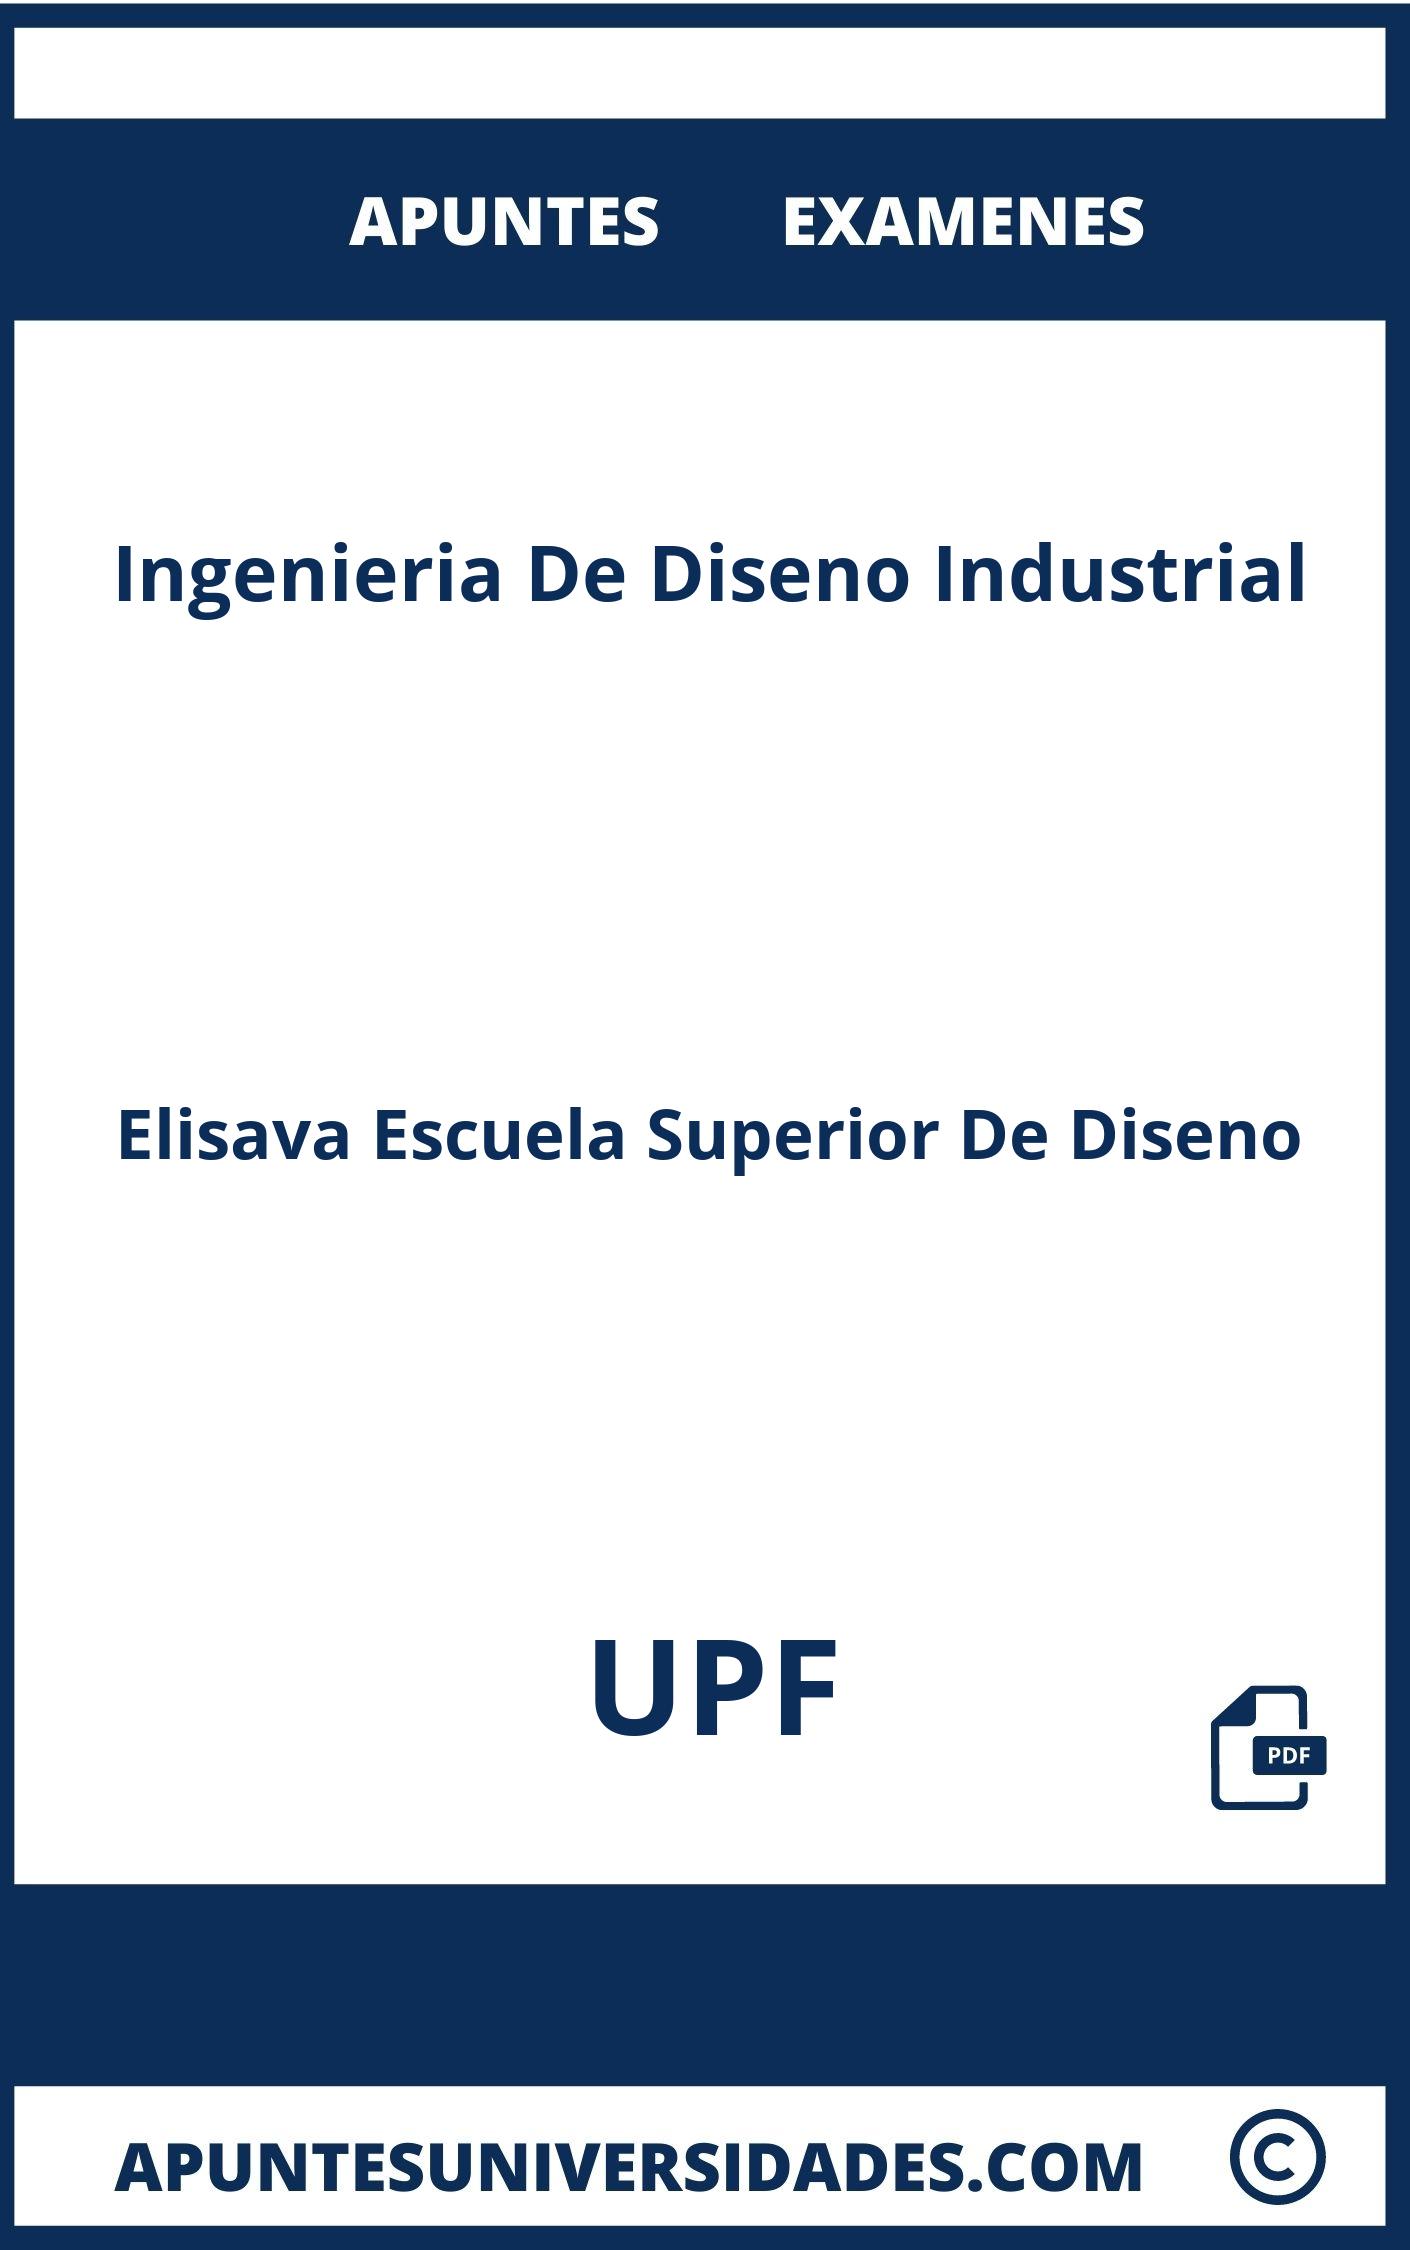 Apuntes y Examenes de Ingenieria De Diseno Industrial UPF